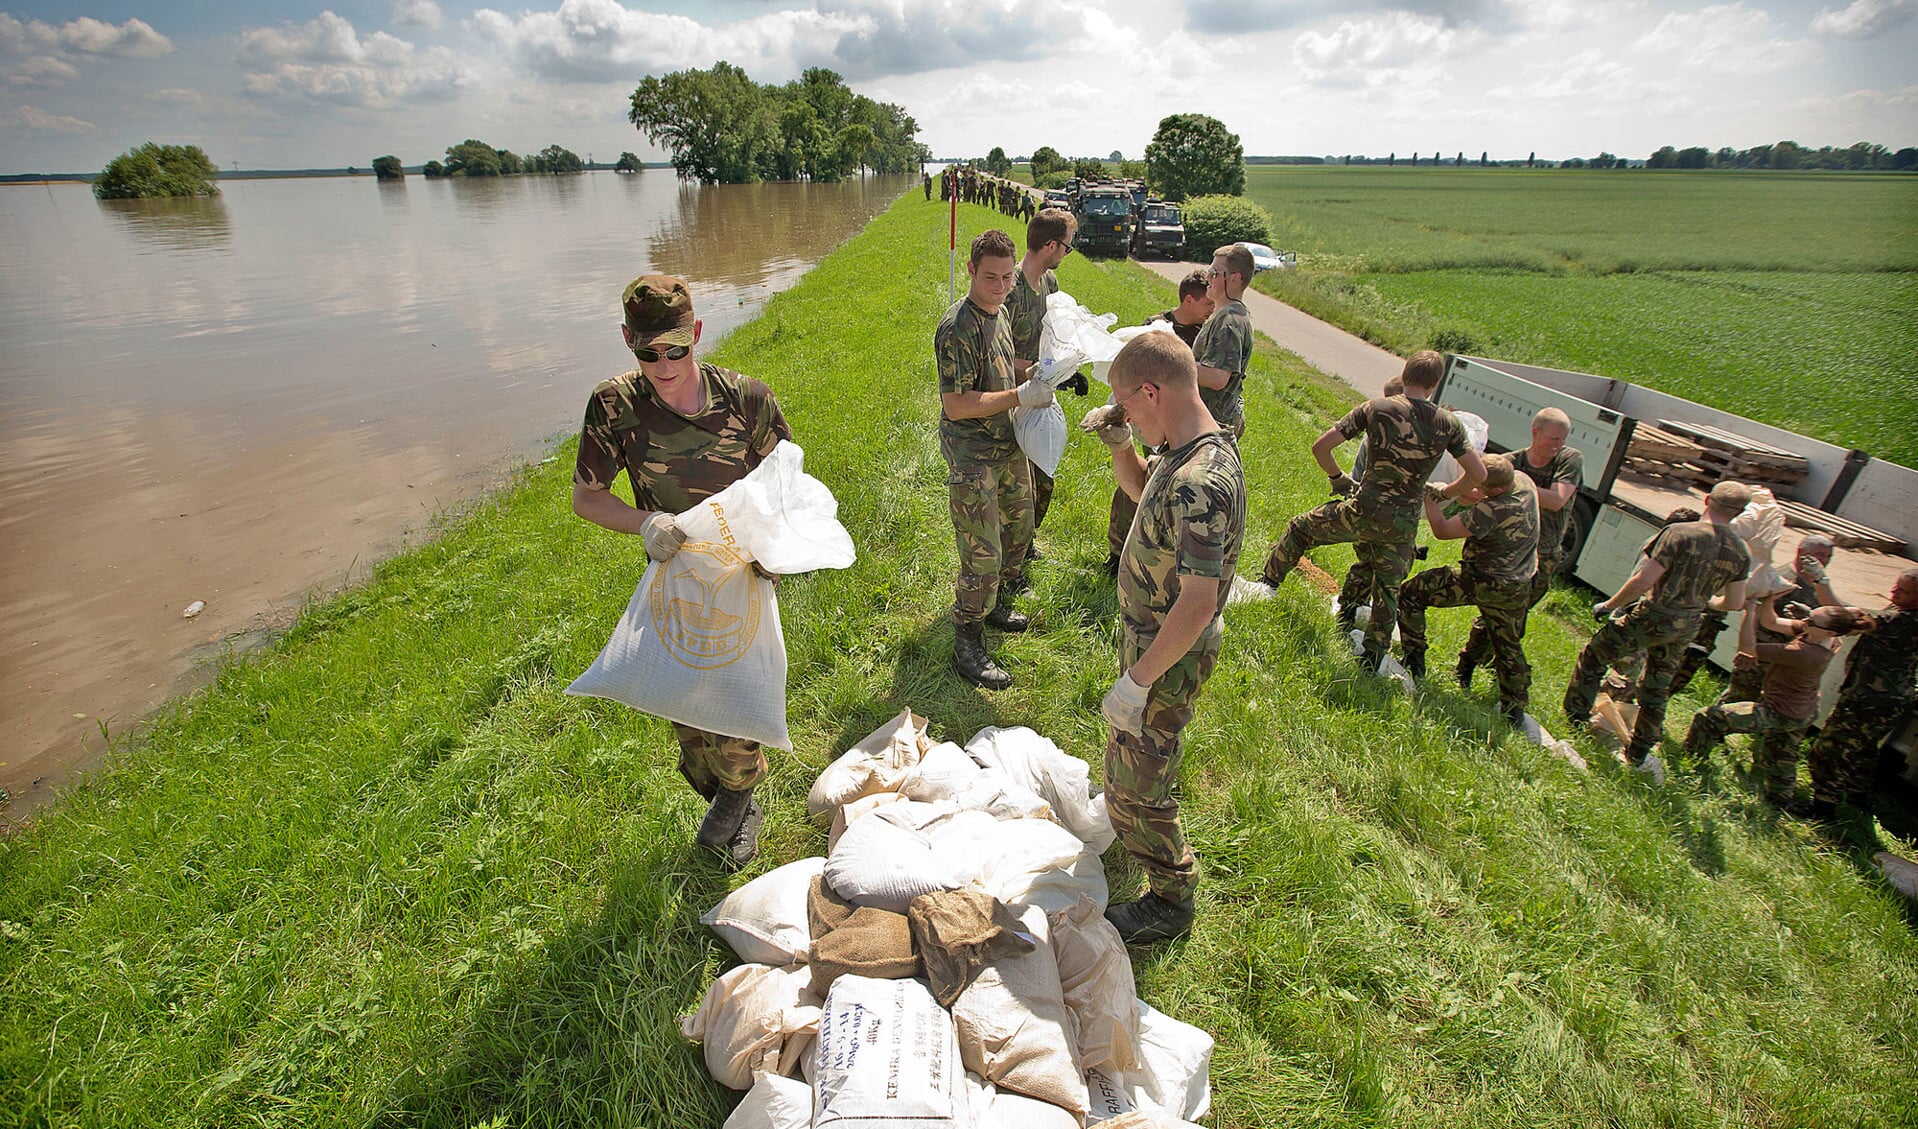 Het is niet nodig om Nederlandse militairen nog vaker in te zetten bij civiele operaties – zoals het verhogen van een stuk dijk langs de rivier. Het leger wordt al op genoeg momenten ingezet.